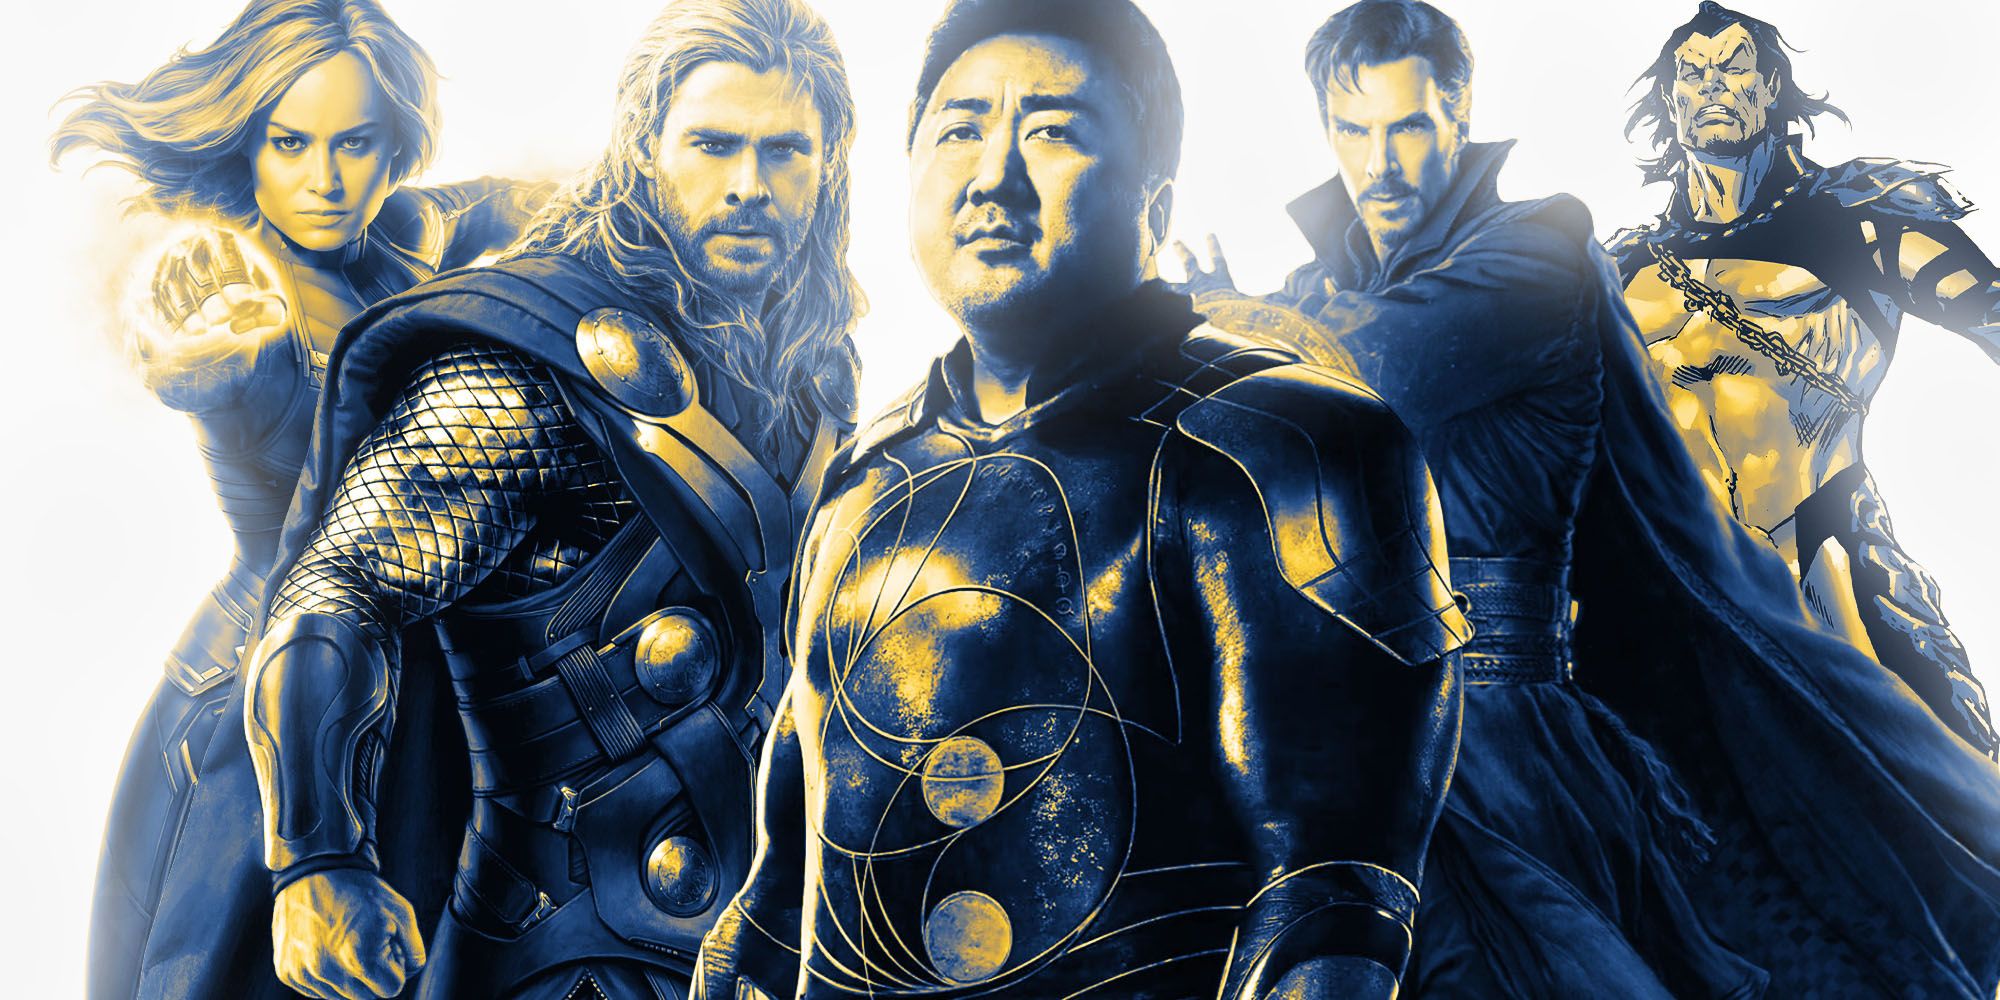 Strongest Avengers 5 roster Gilgamesh Thor Captain marvel Doctor strange namor